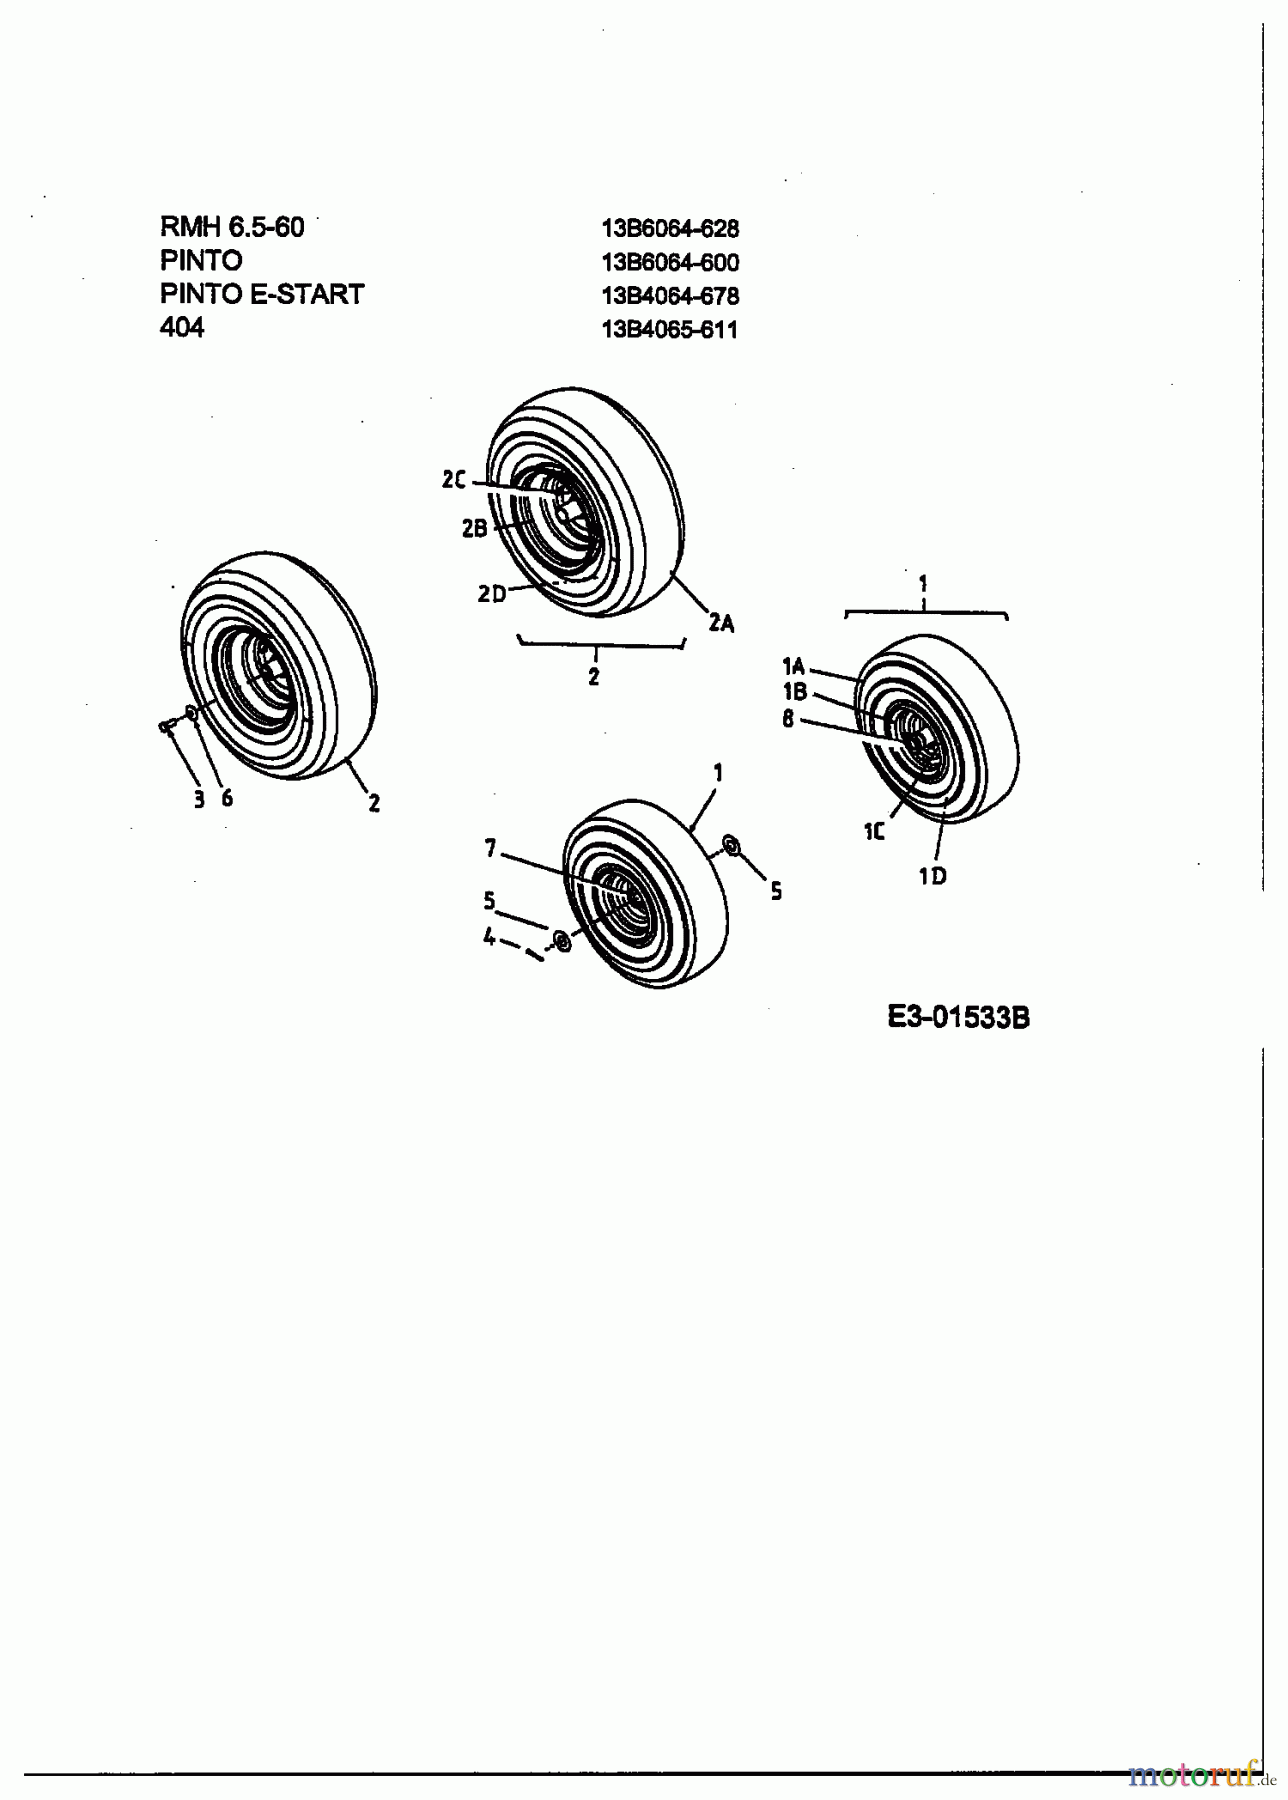  MTD ältere Modelle Rasentraktoren Pinto E-Start 13B4065-678  (2003) Räder